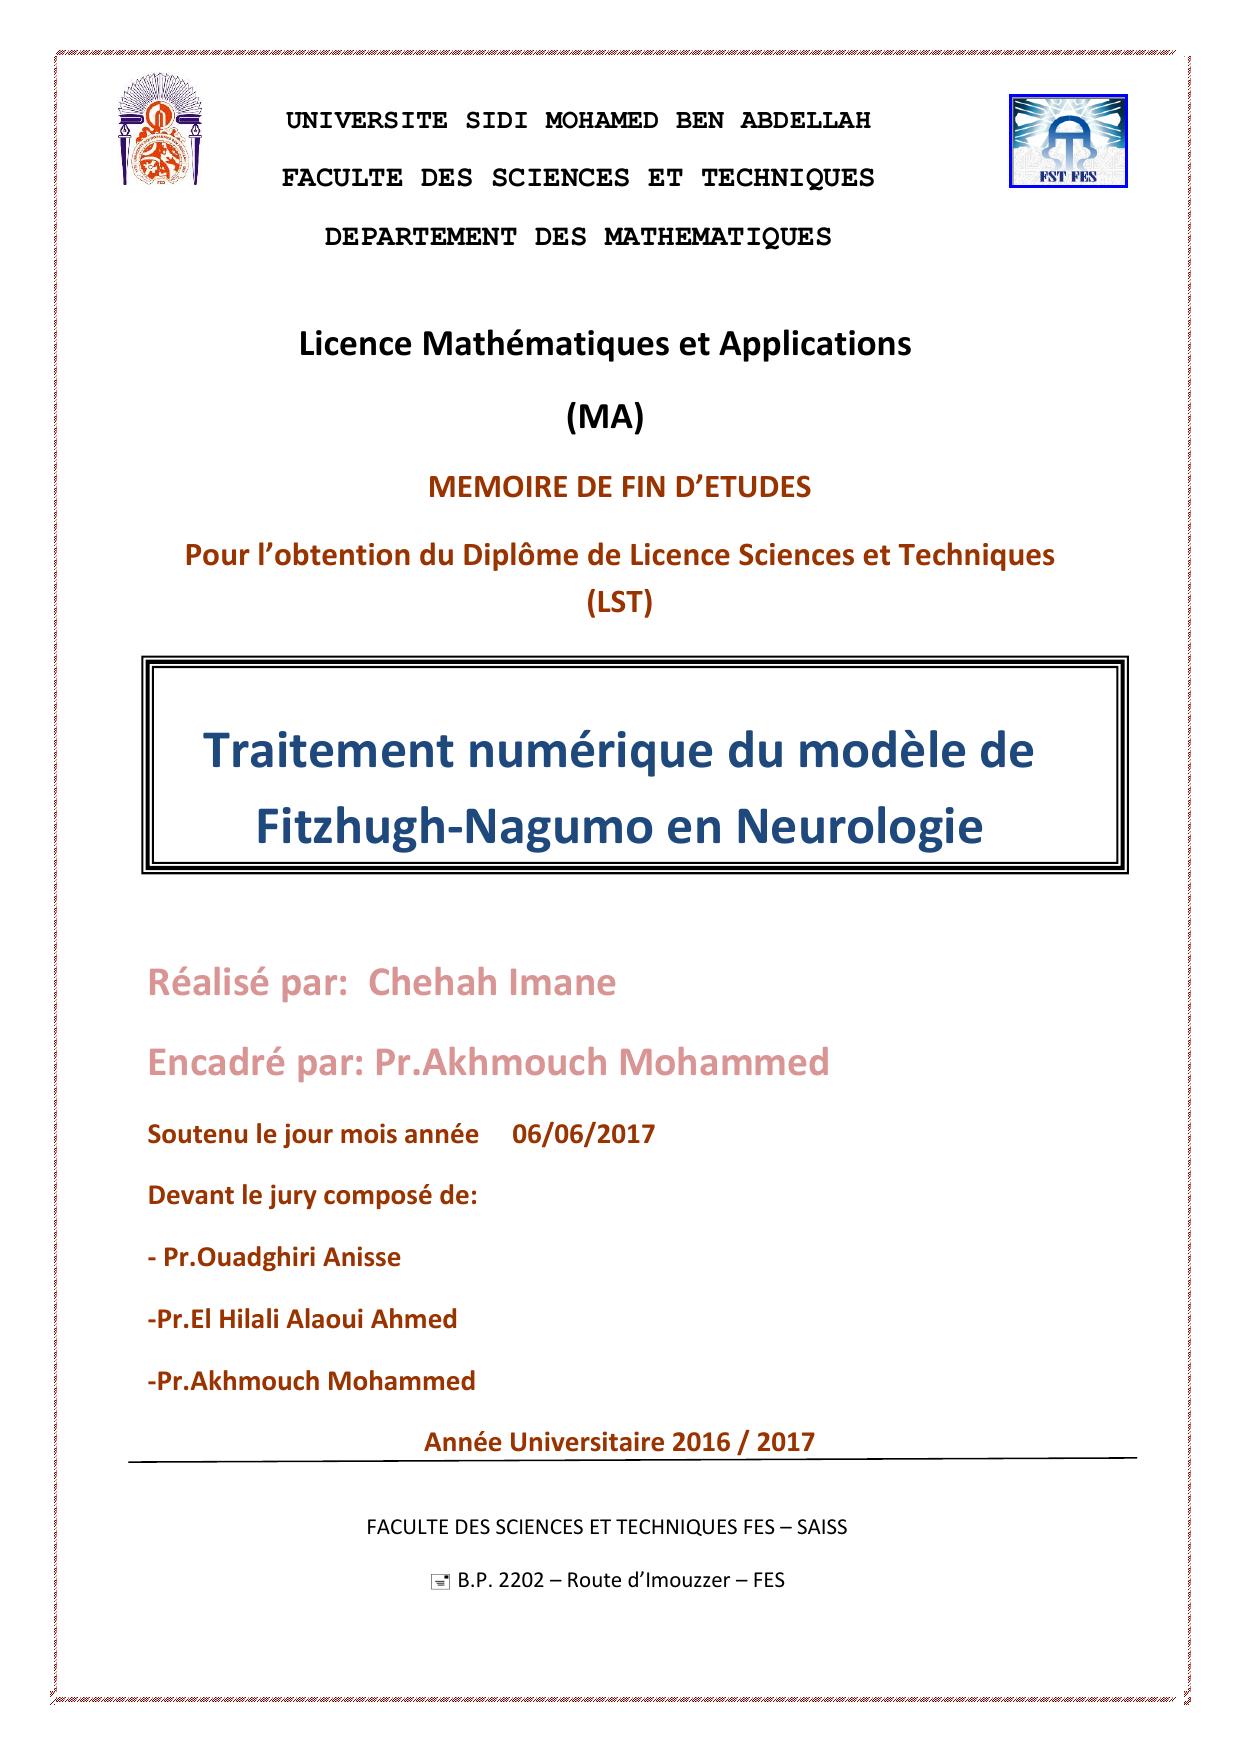 Traitement numérique du modèle de Fitzhugh-Nagumo en Neurologie